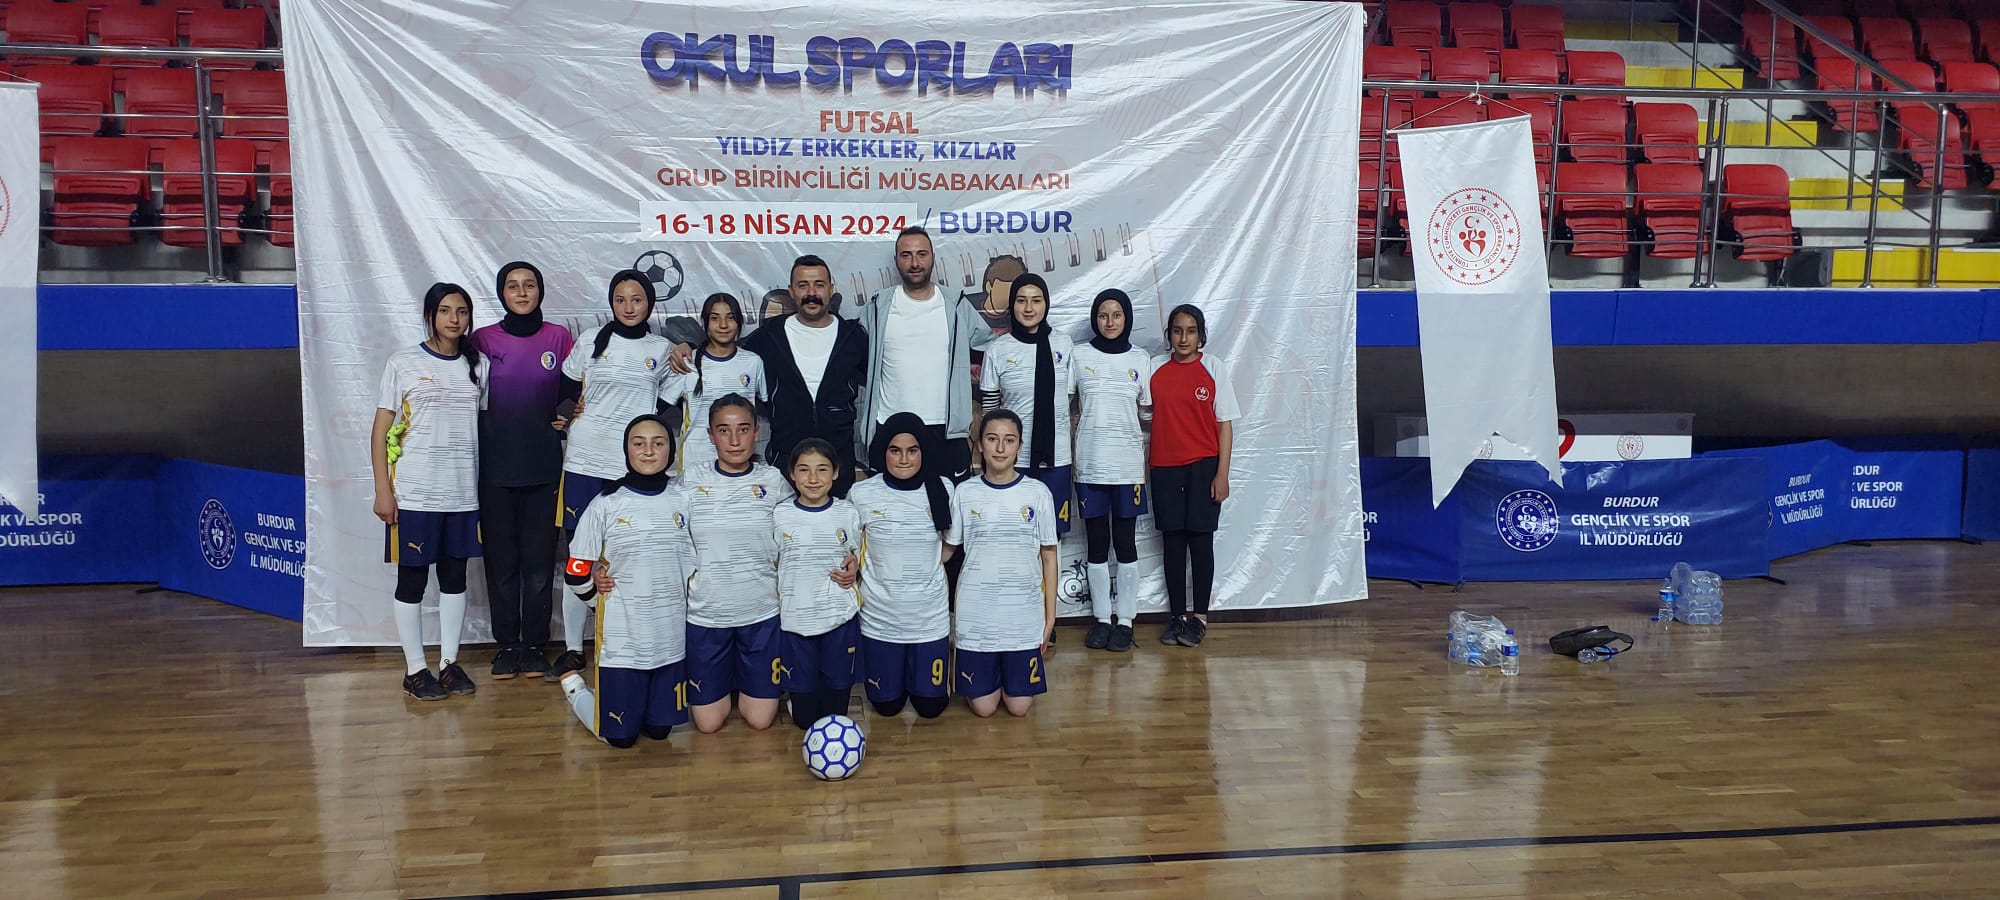 Çayırbağ Gazi Ortaokulu'nun Yıldızları Futsal'da Zirveye Koşuyor